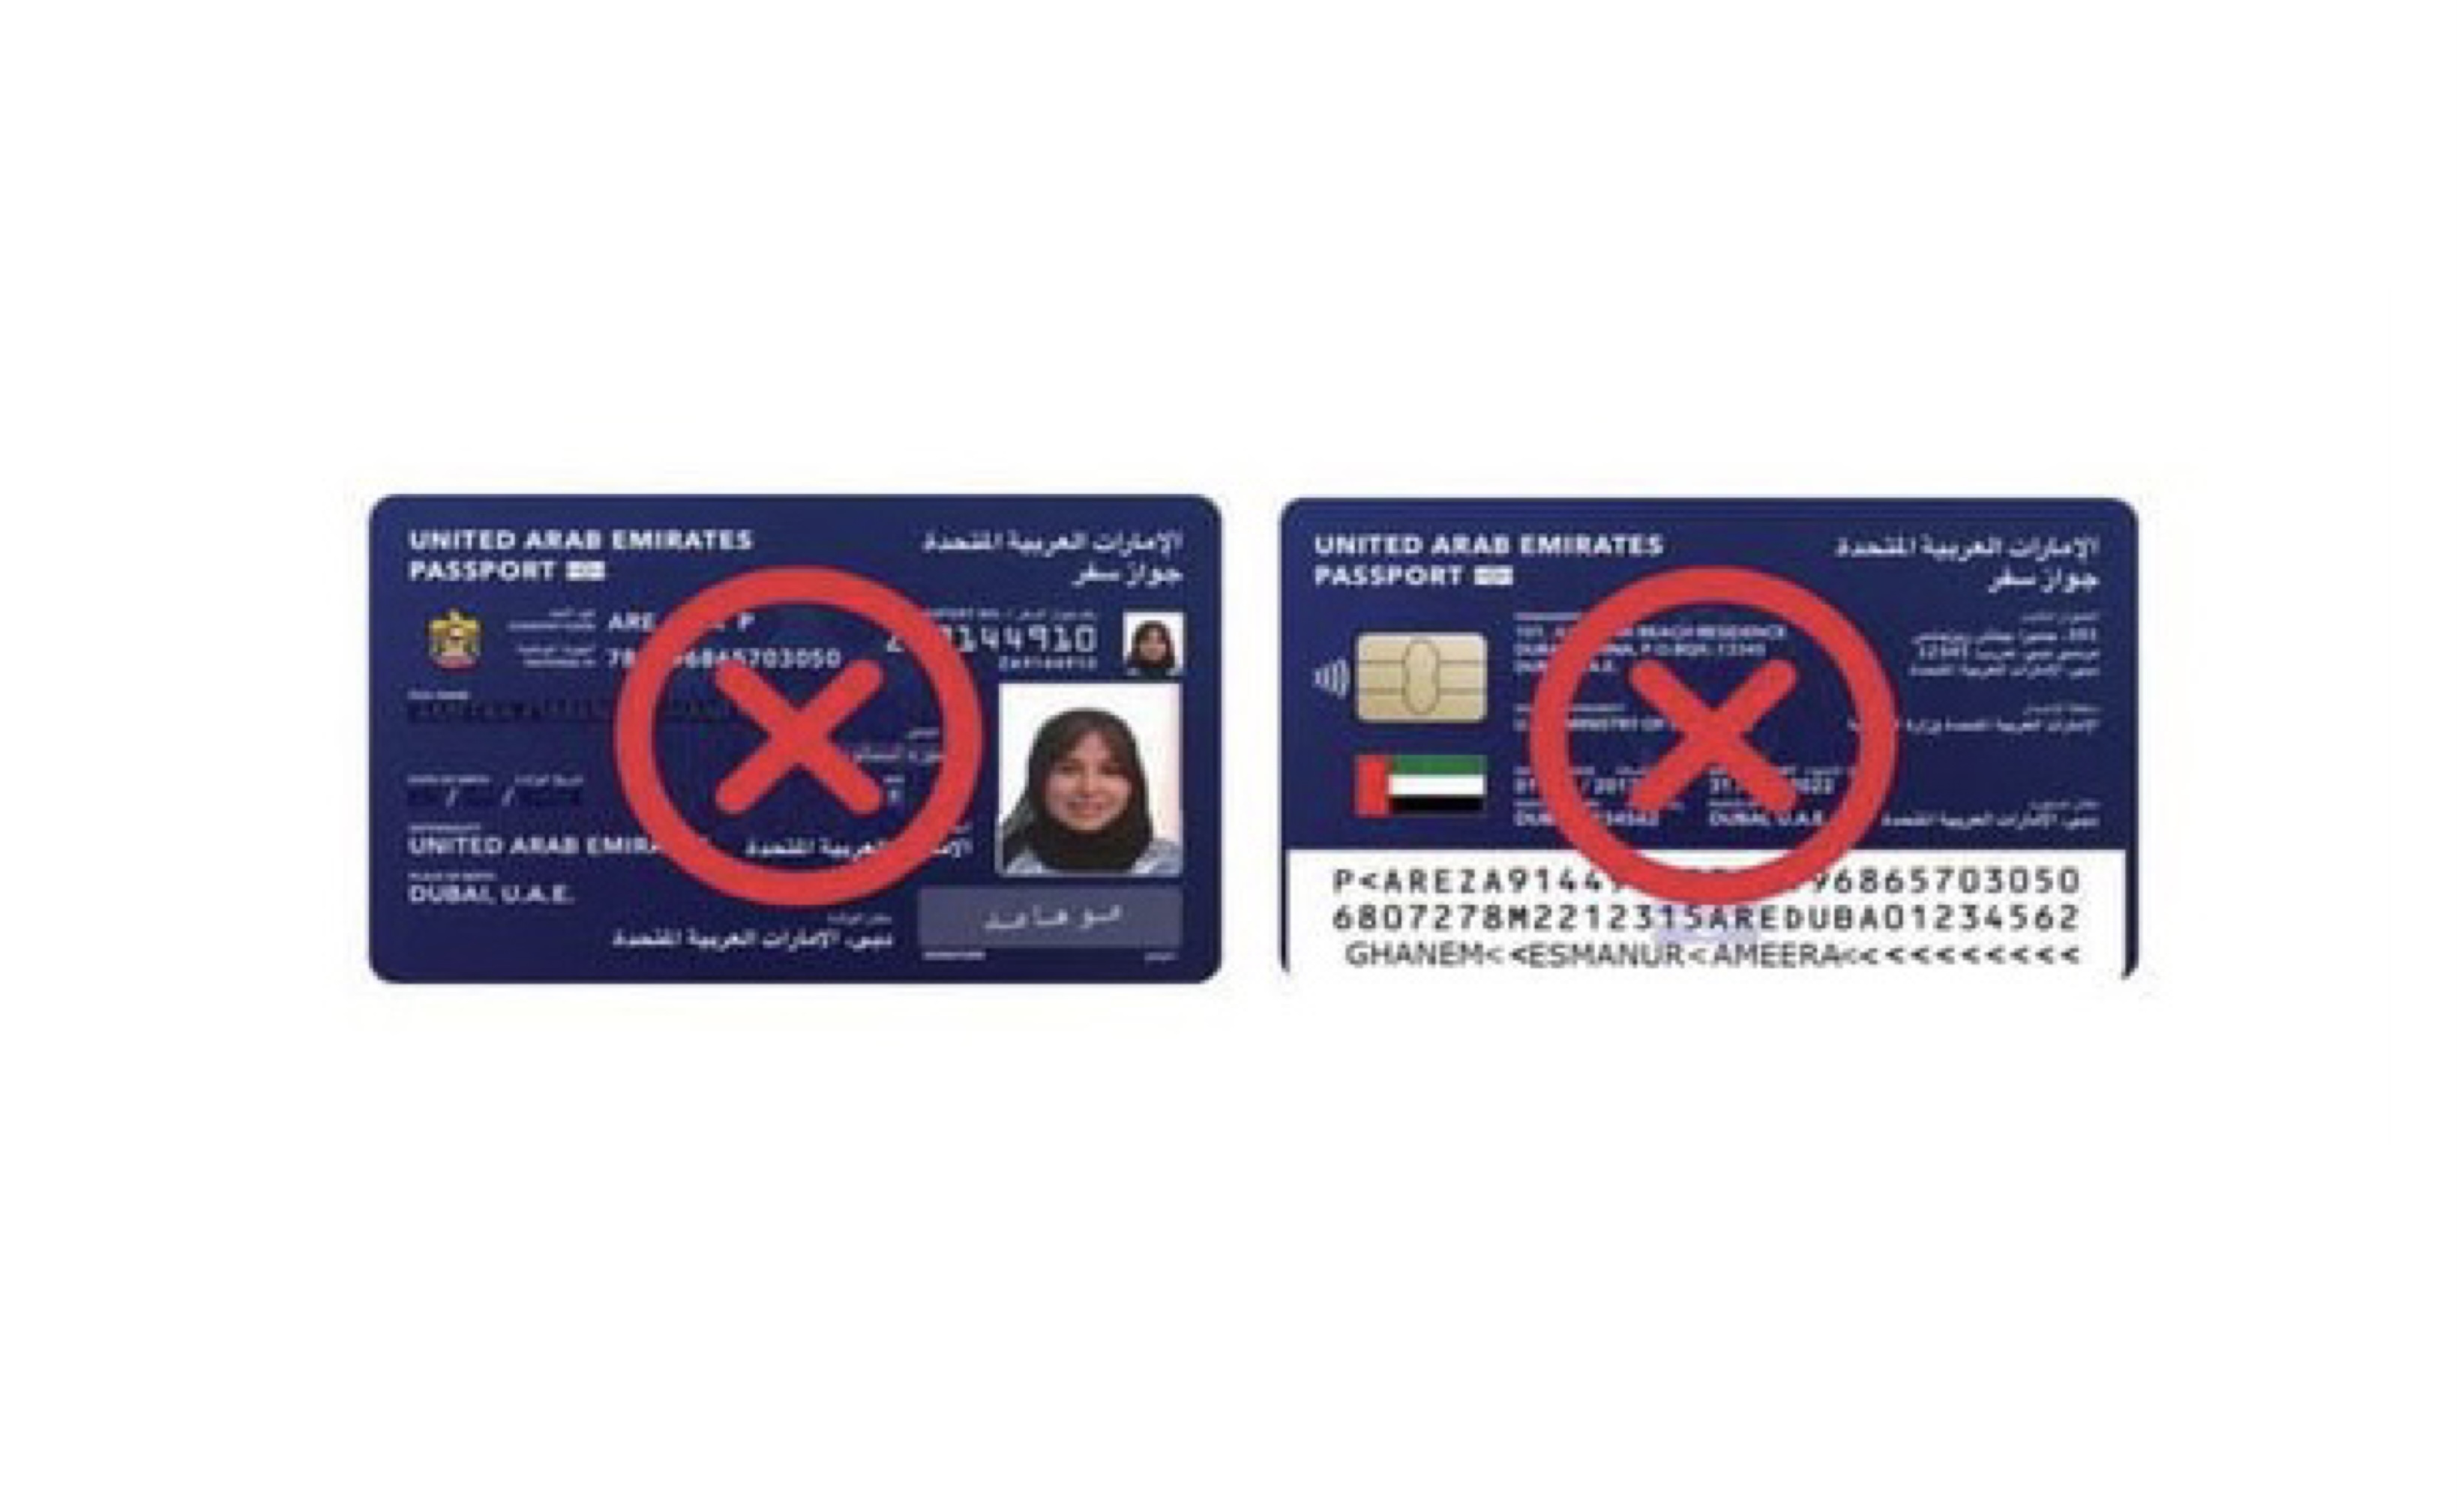 الاتحادية للهوية والجنسية تنفي صحة الصورة المتداولة عبر مواقع التواصل المتعلقة بالشكل المزمع لجواز السفر على هيئة بطاقة إلكترونية